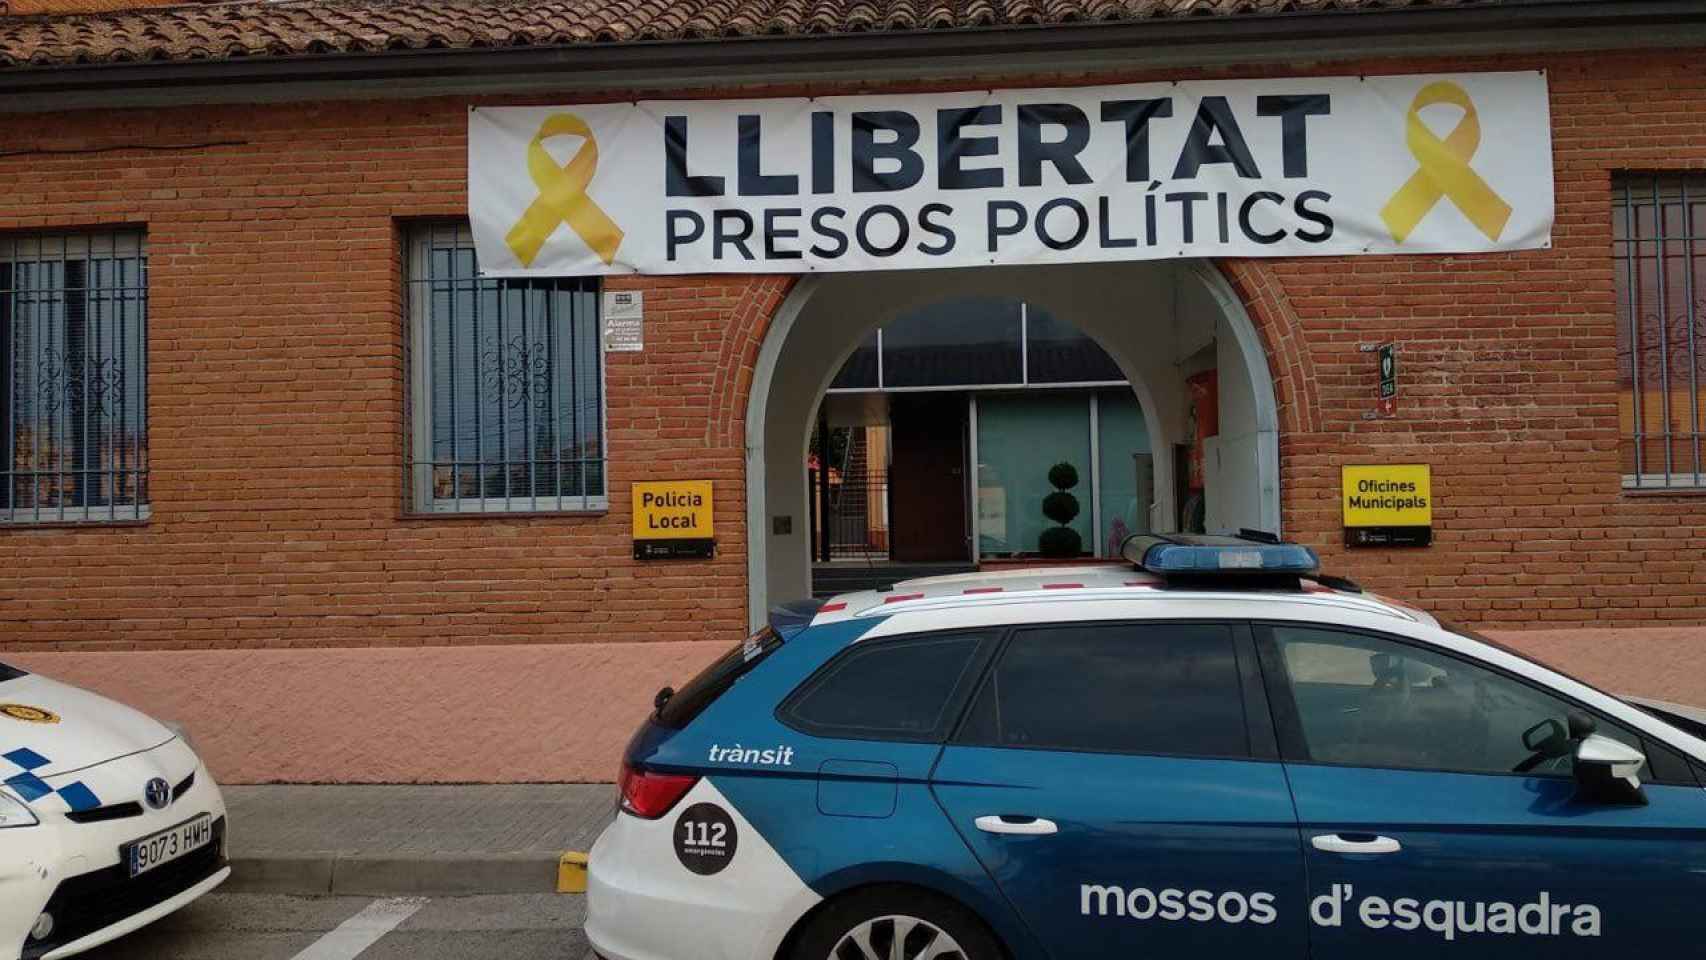 El Ayuntamiento de Vidrieres cuelga la pancarta llibertat presos polítics en la misma entrada que la Policía Local